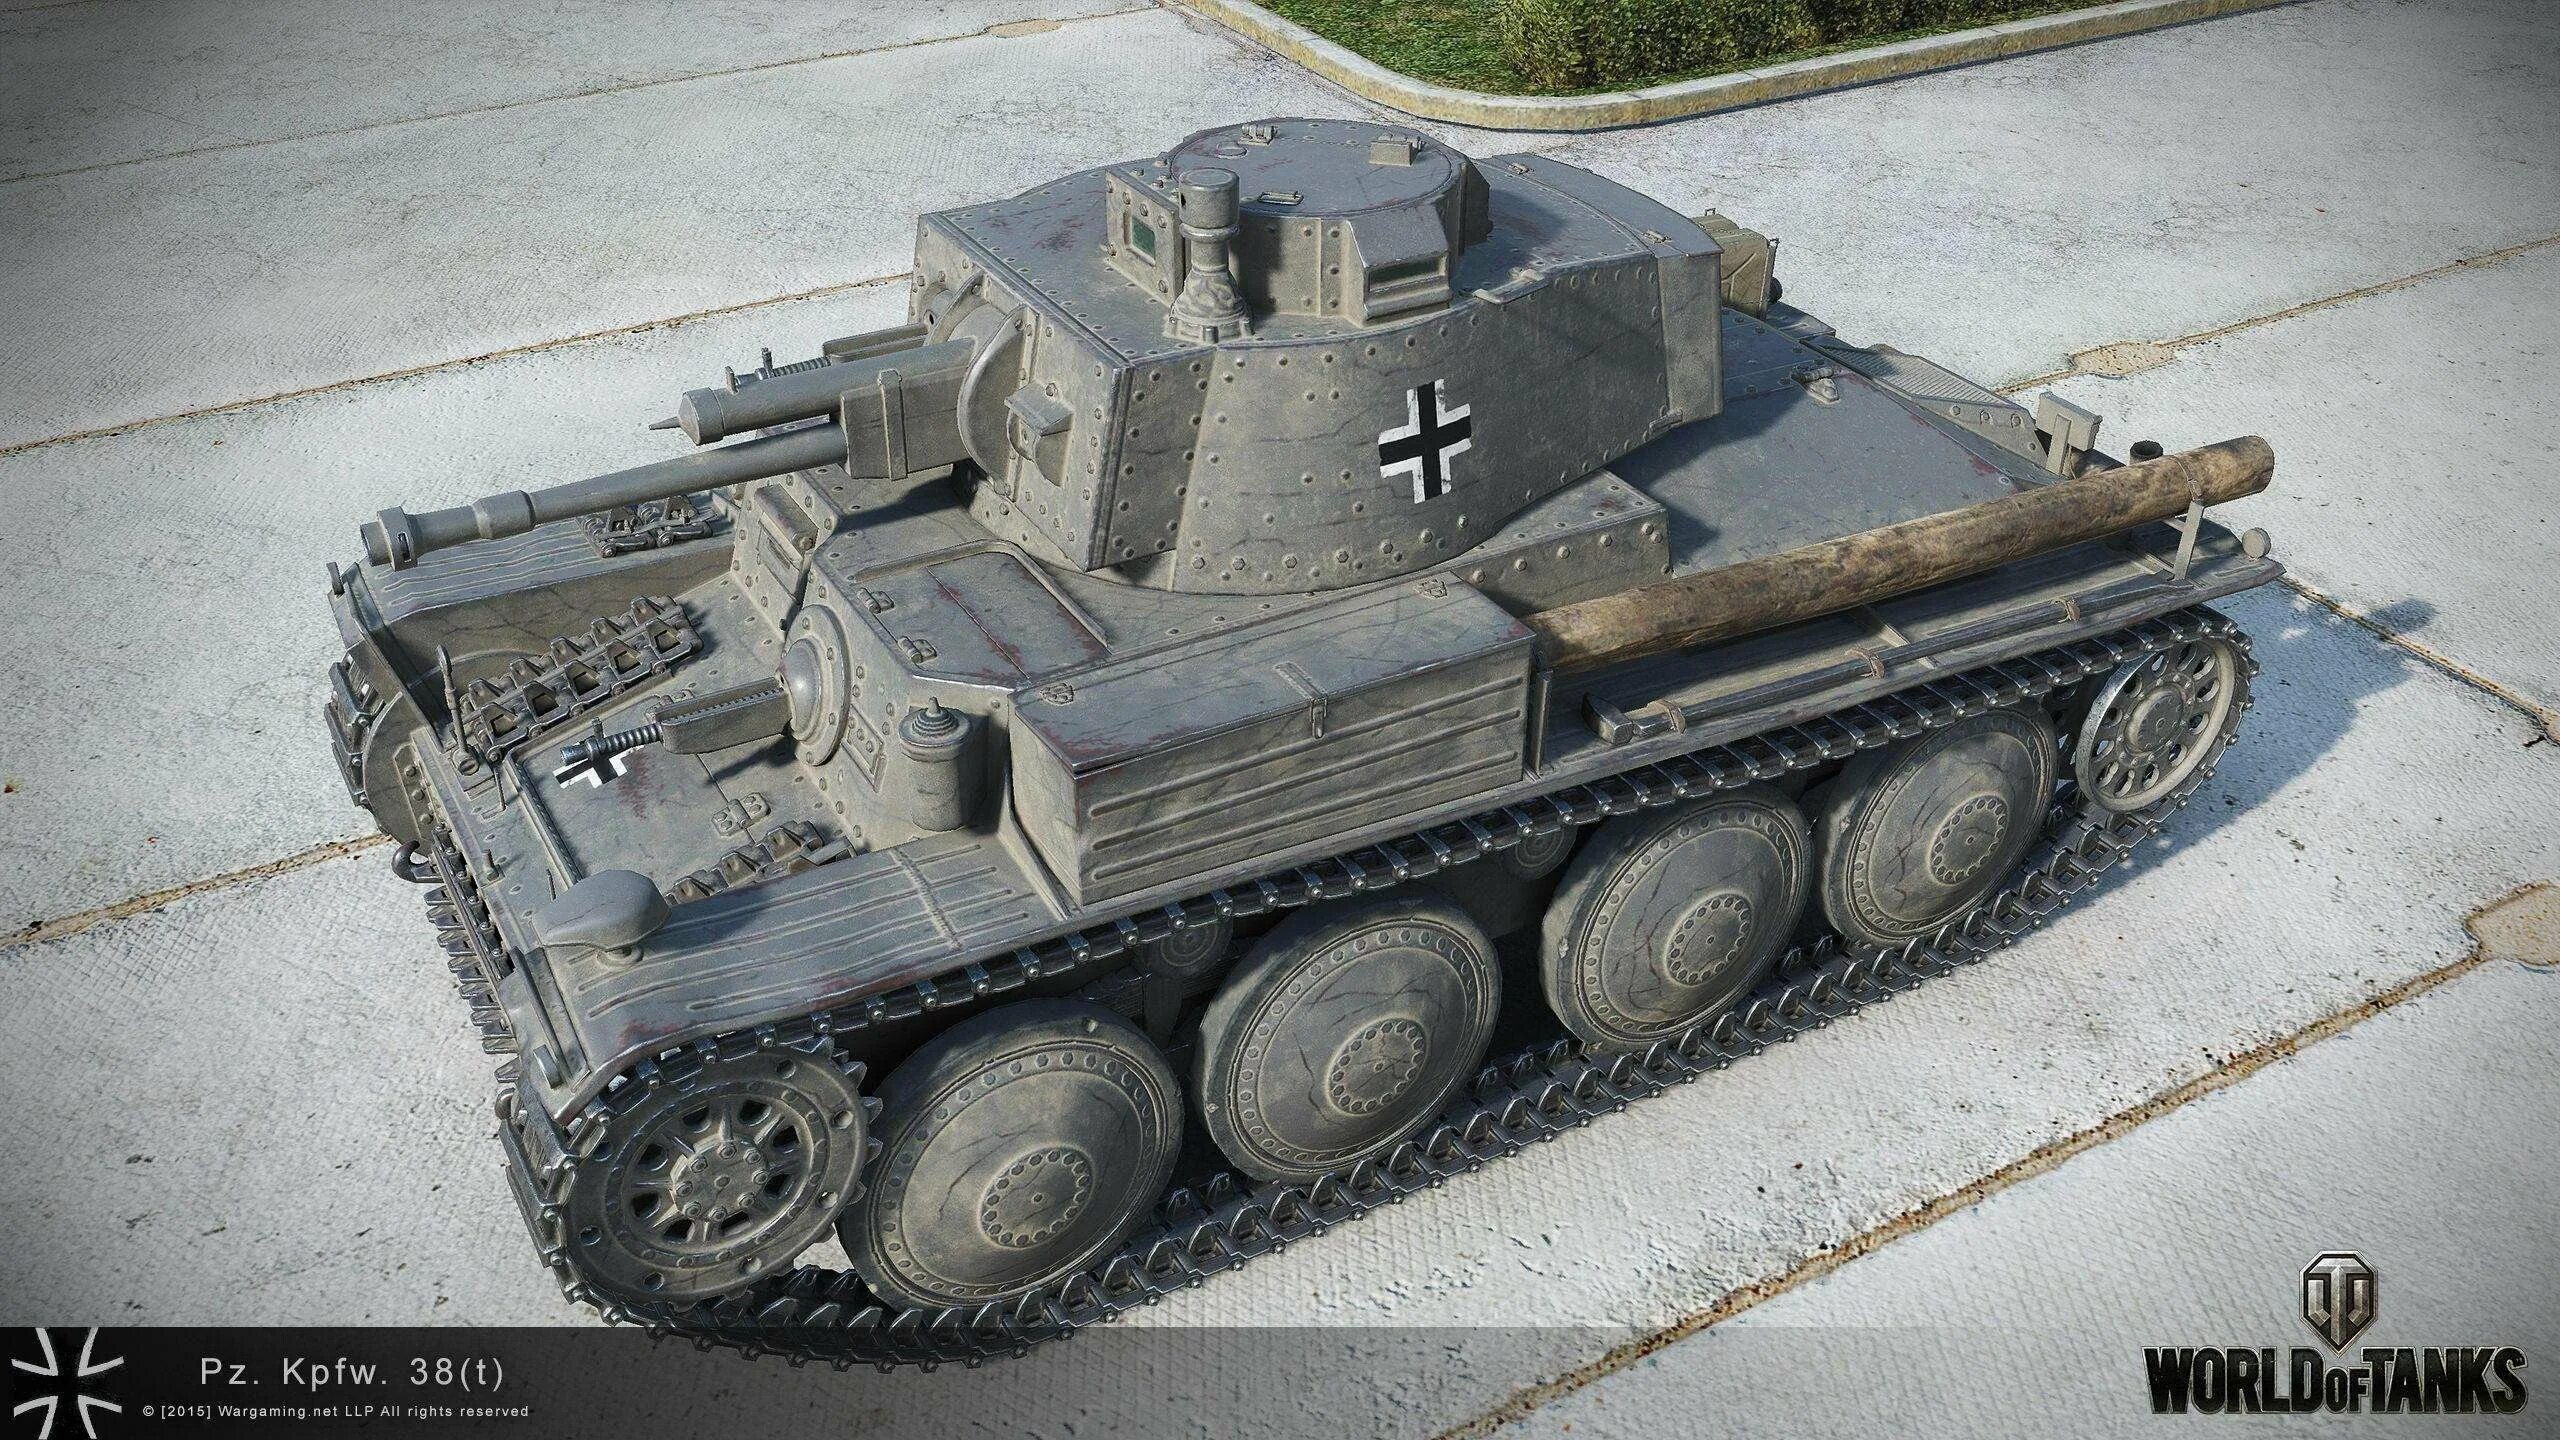 PZ 38 T. PZ.Kpfw.38(t). PZ.38t Ausf e/f. Pz kpfw 38